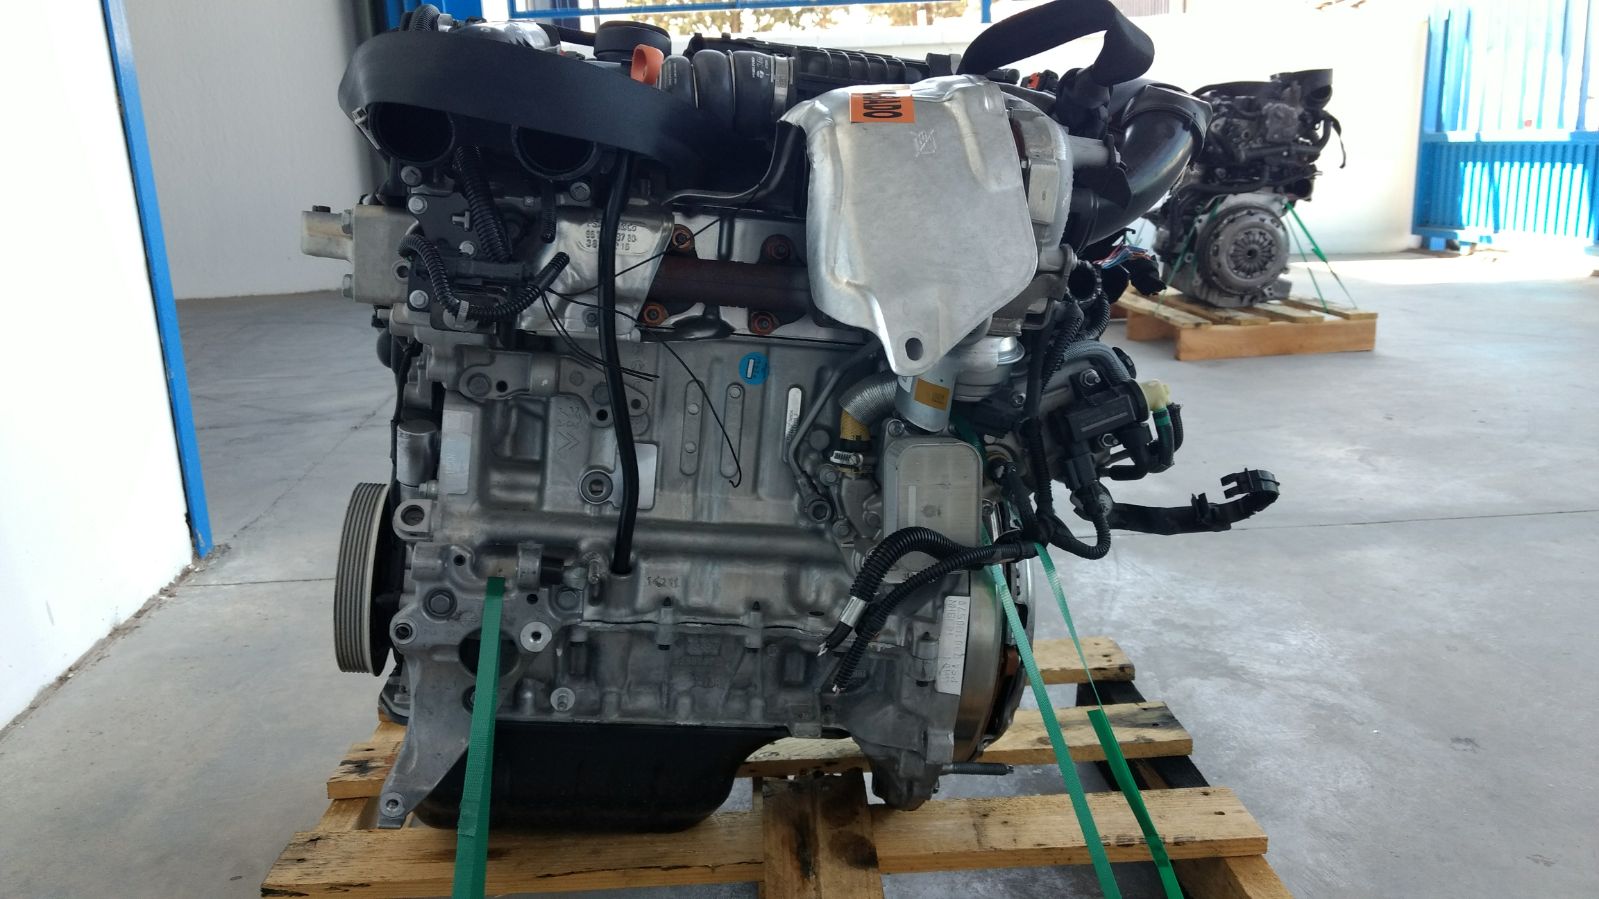 Motor Citroen C4 1.6 HDI 75 CV segunda mano diesel Ref BH01